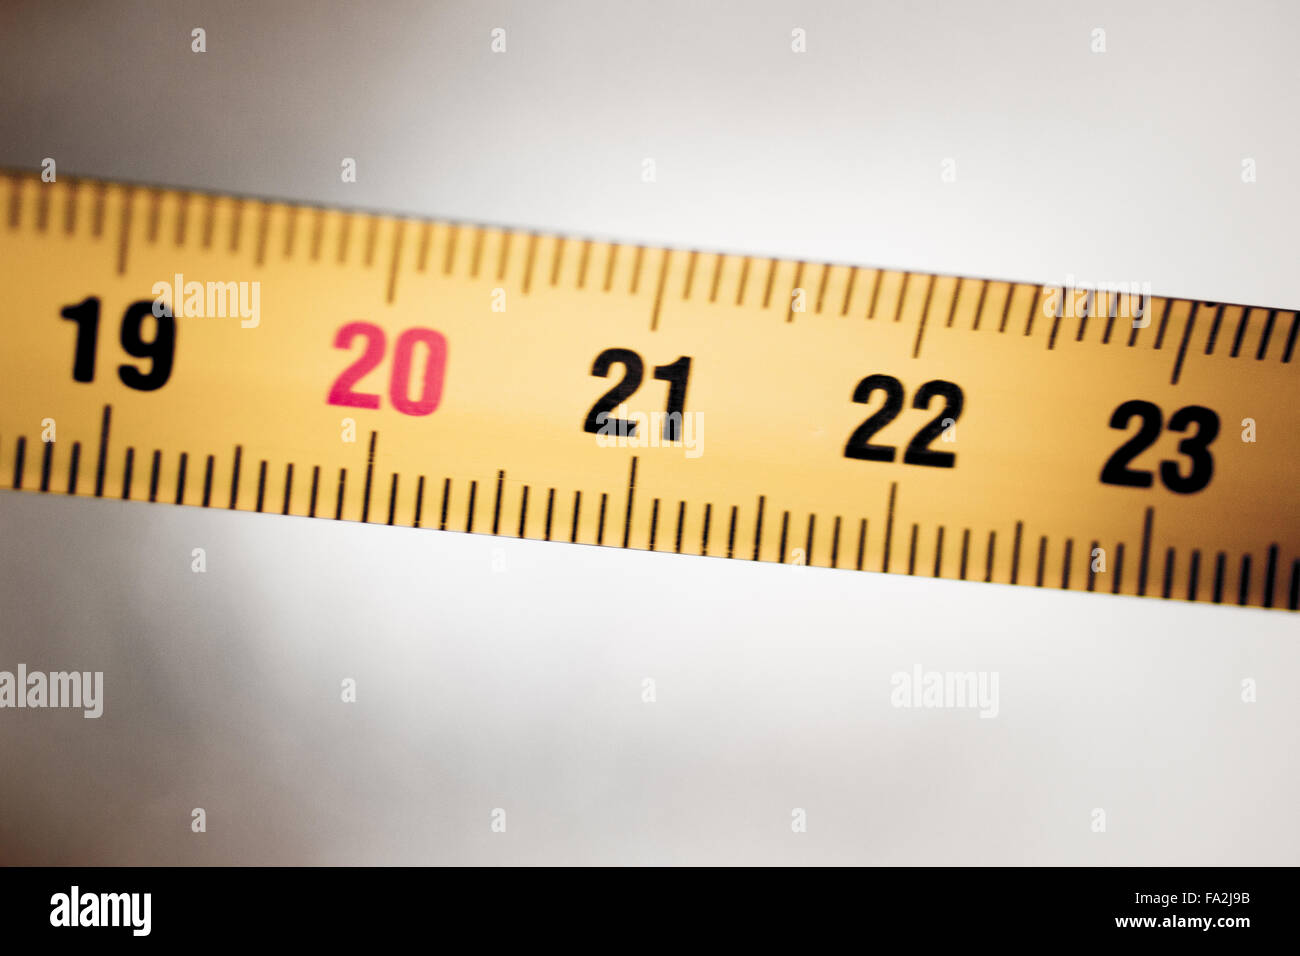 Cinta métrica regla de metal mostrando measuement en centímetros (cm)  números sobre fondo liso Fotografía de stock - Alamy